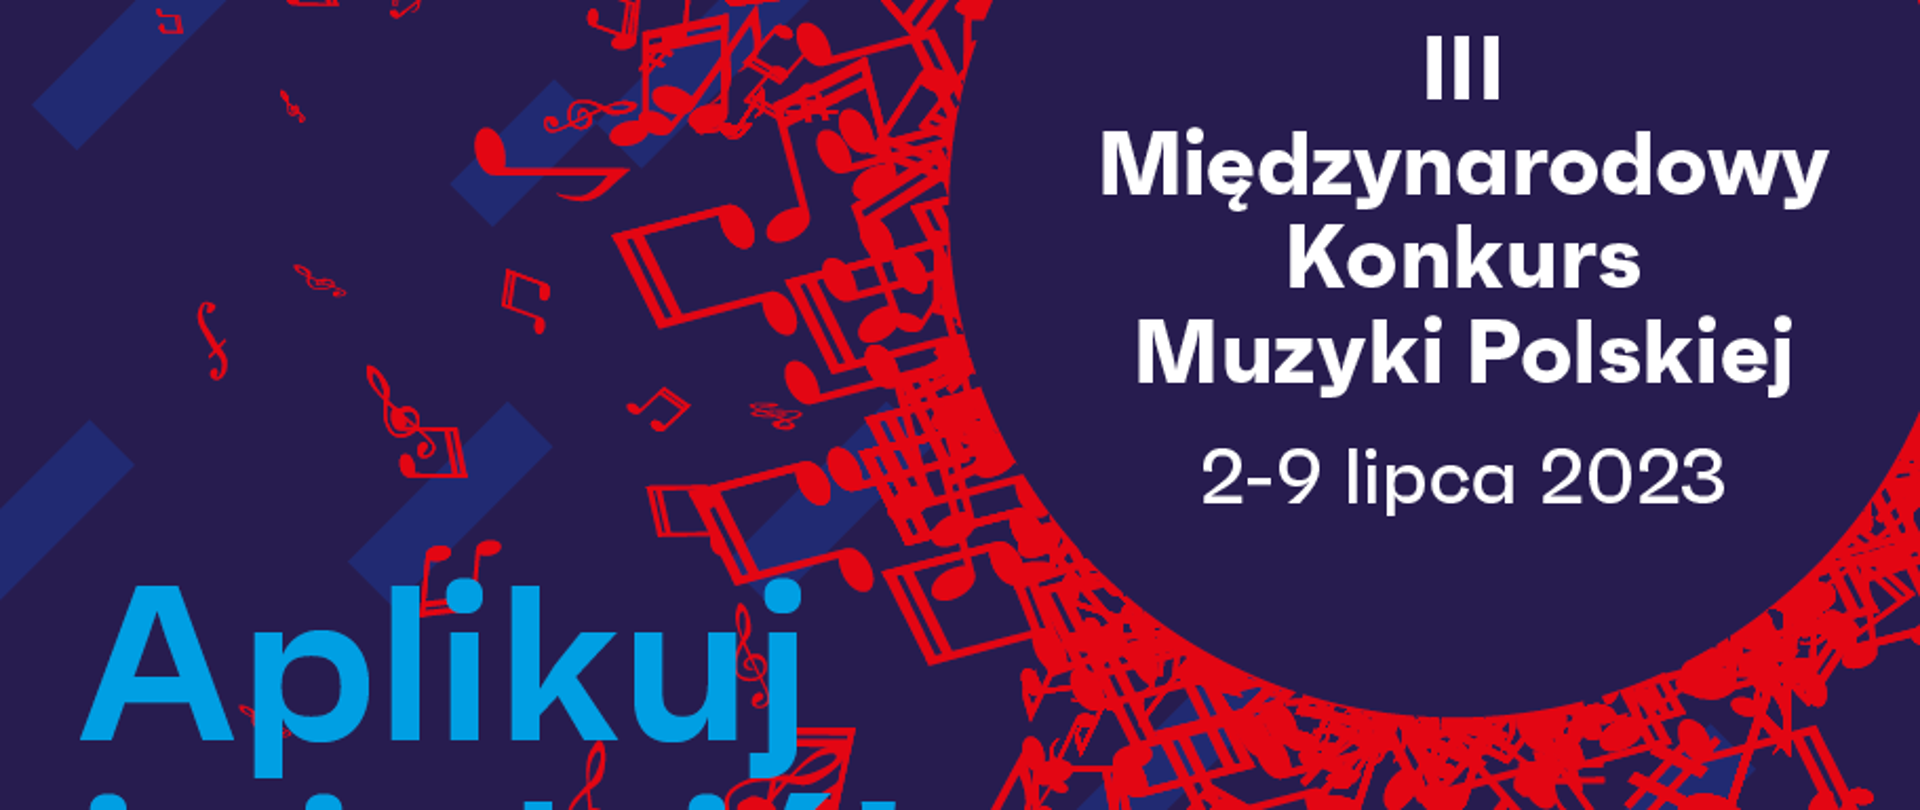 III Międzynarodowy Konkurs Muzyki Polskiej